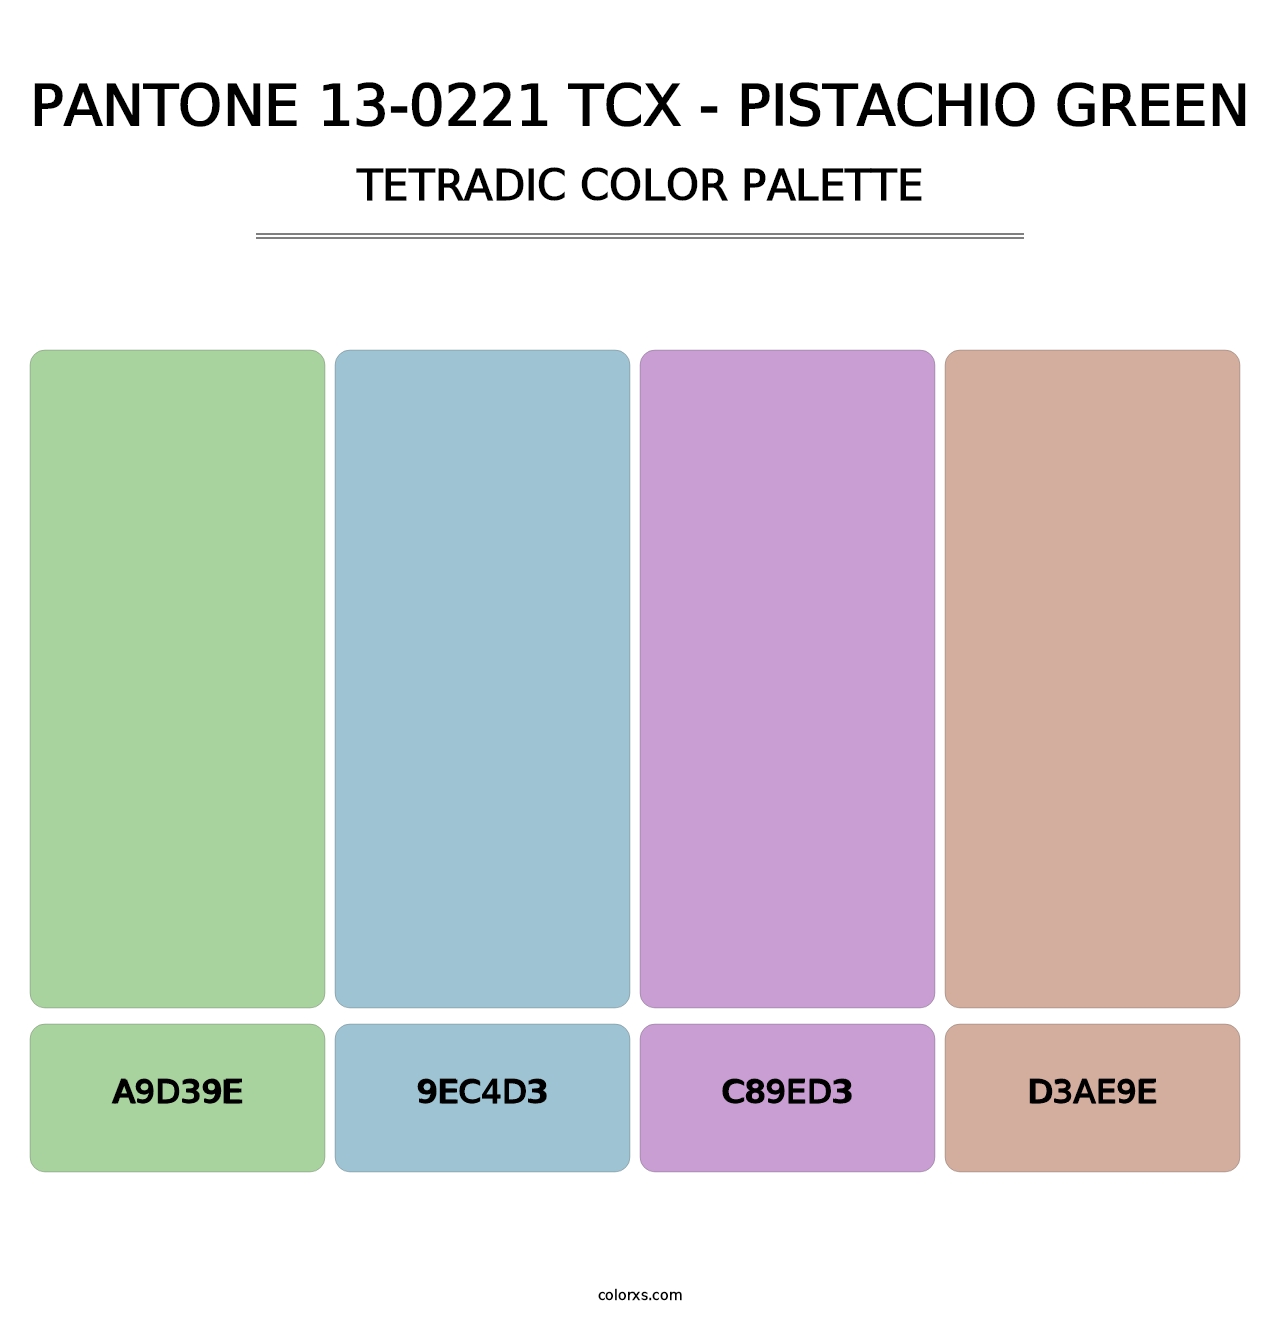 PANTONE 13-0221 TCX - Pistachio Green - Tetradic Color Palette